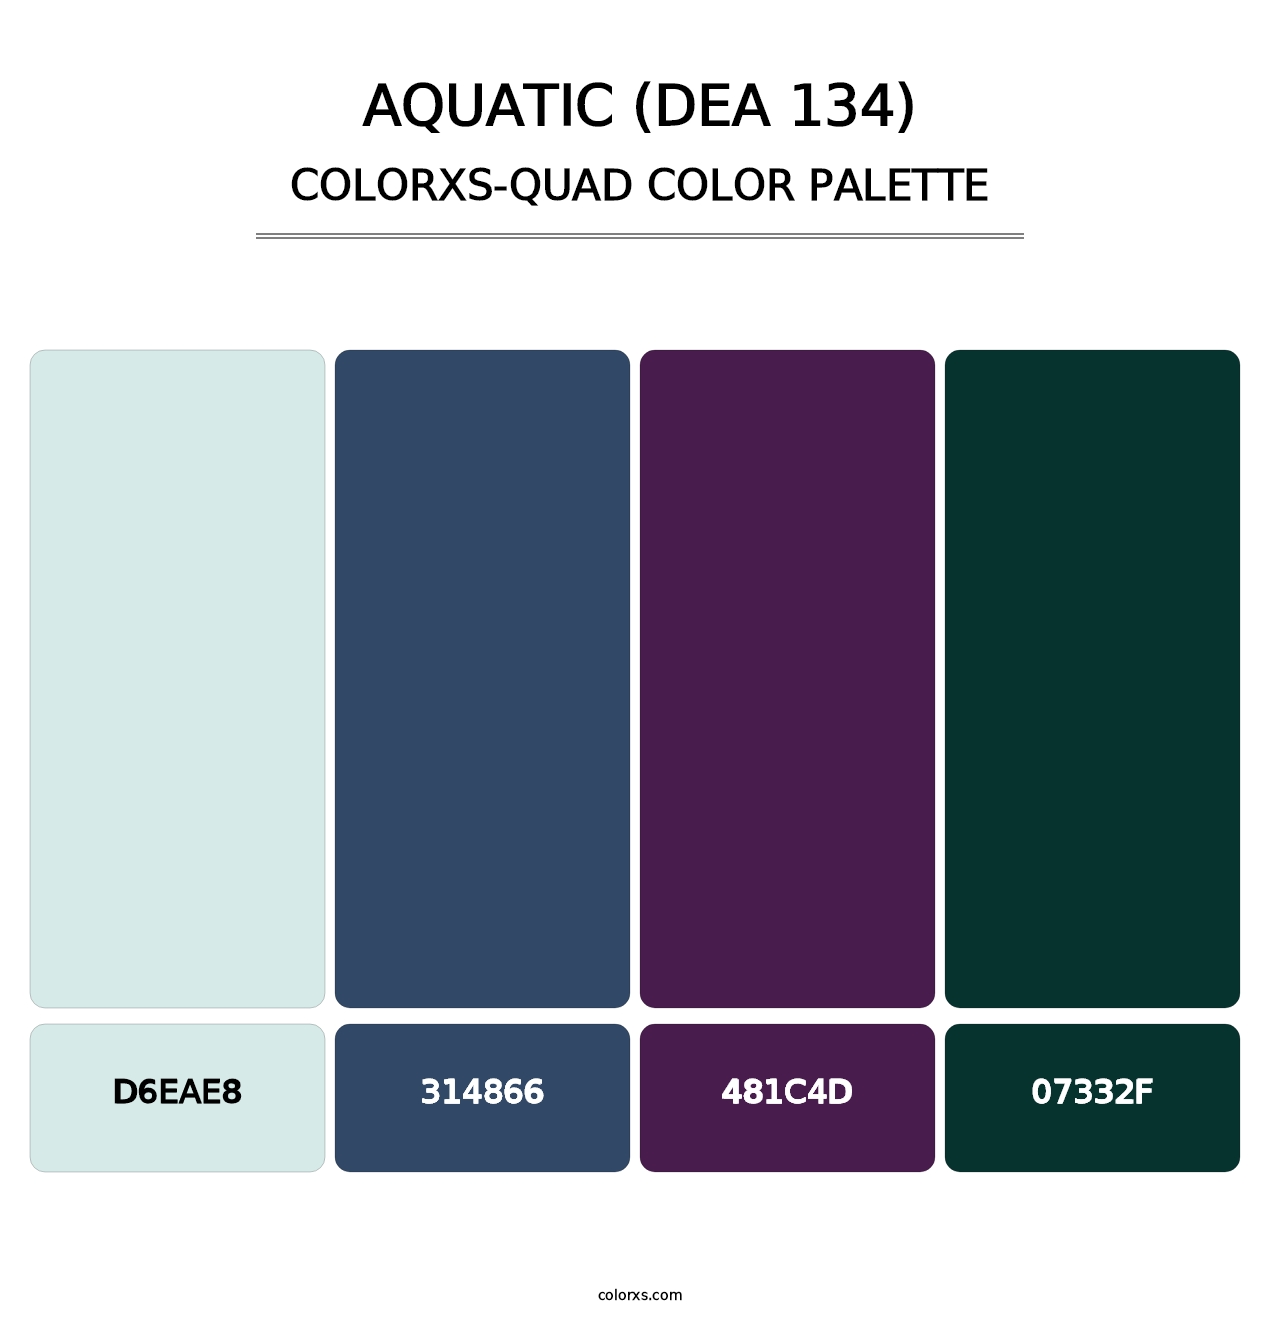 Aquatic (DEA 134) - Colorxs Quad Palette